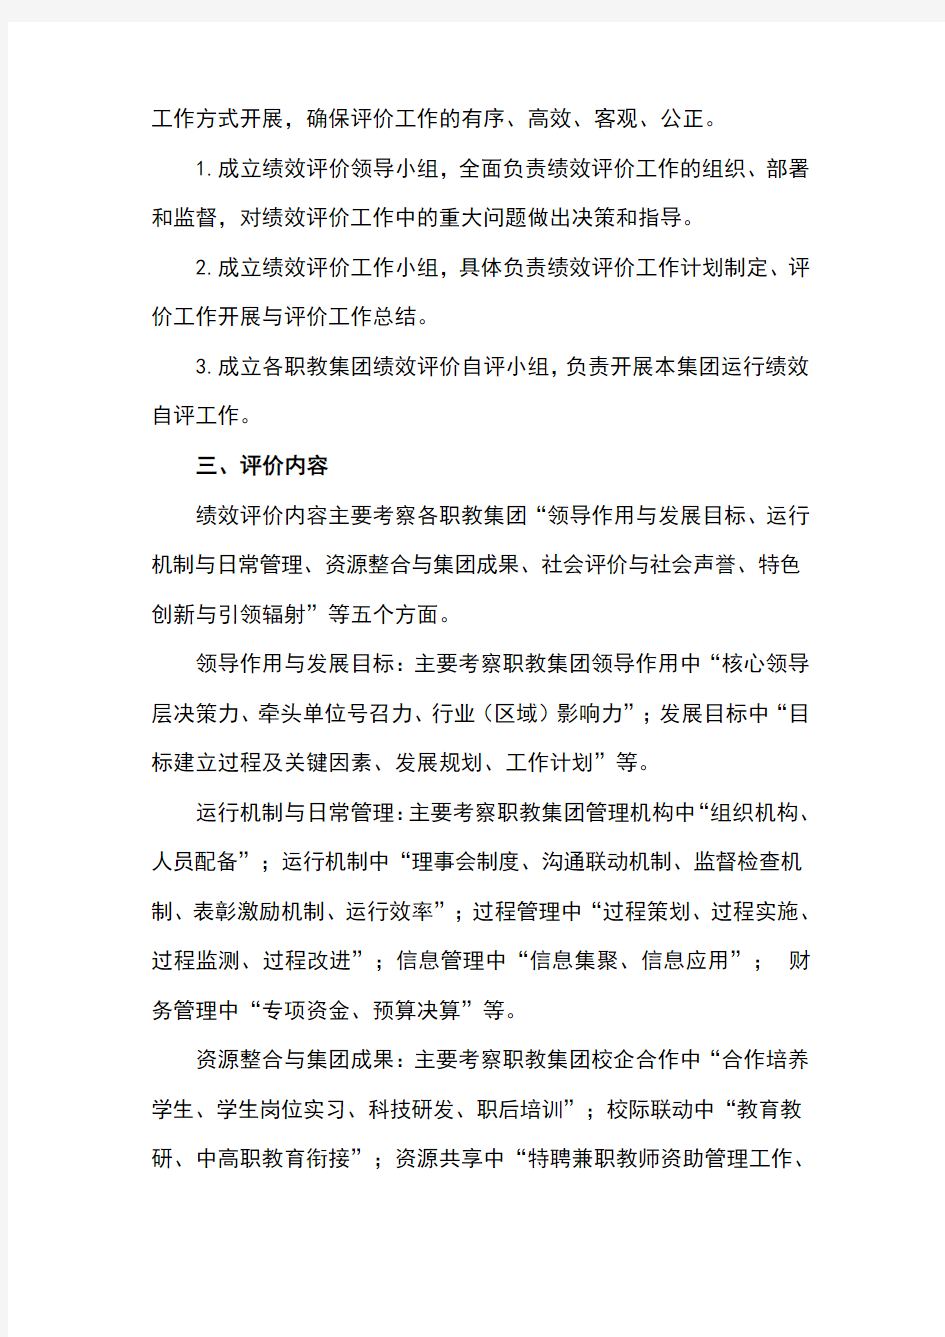 上海市职业教育集团运行绩效评价实施方案